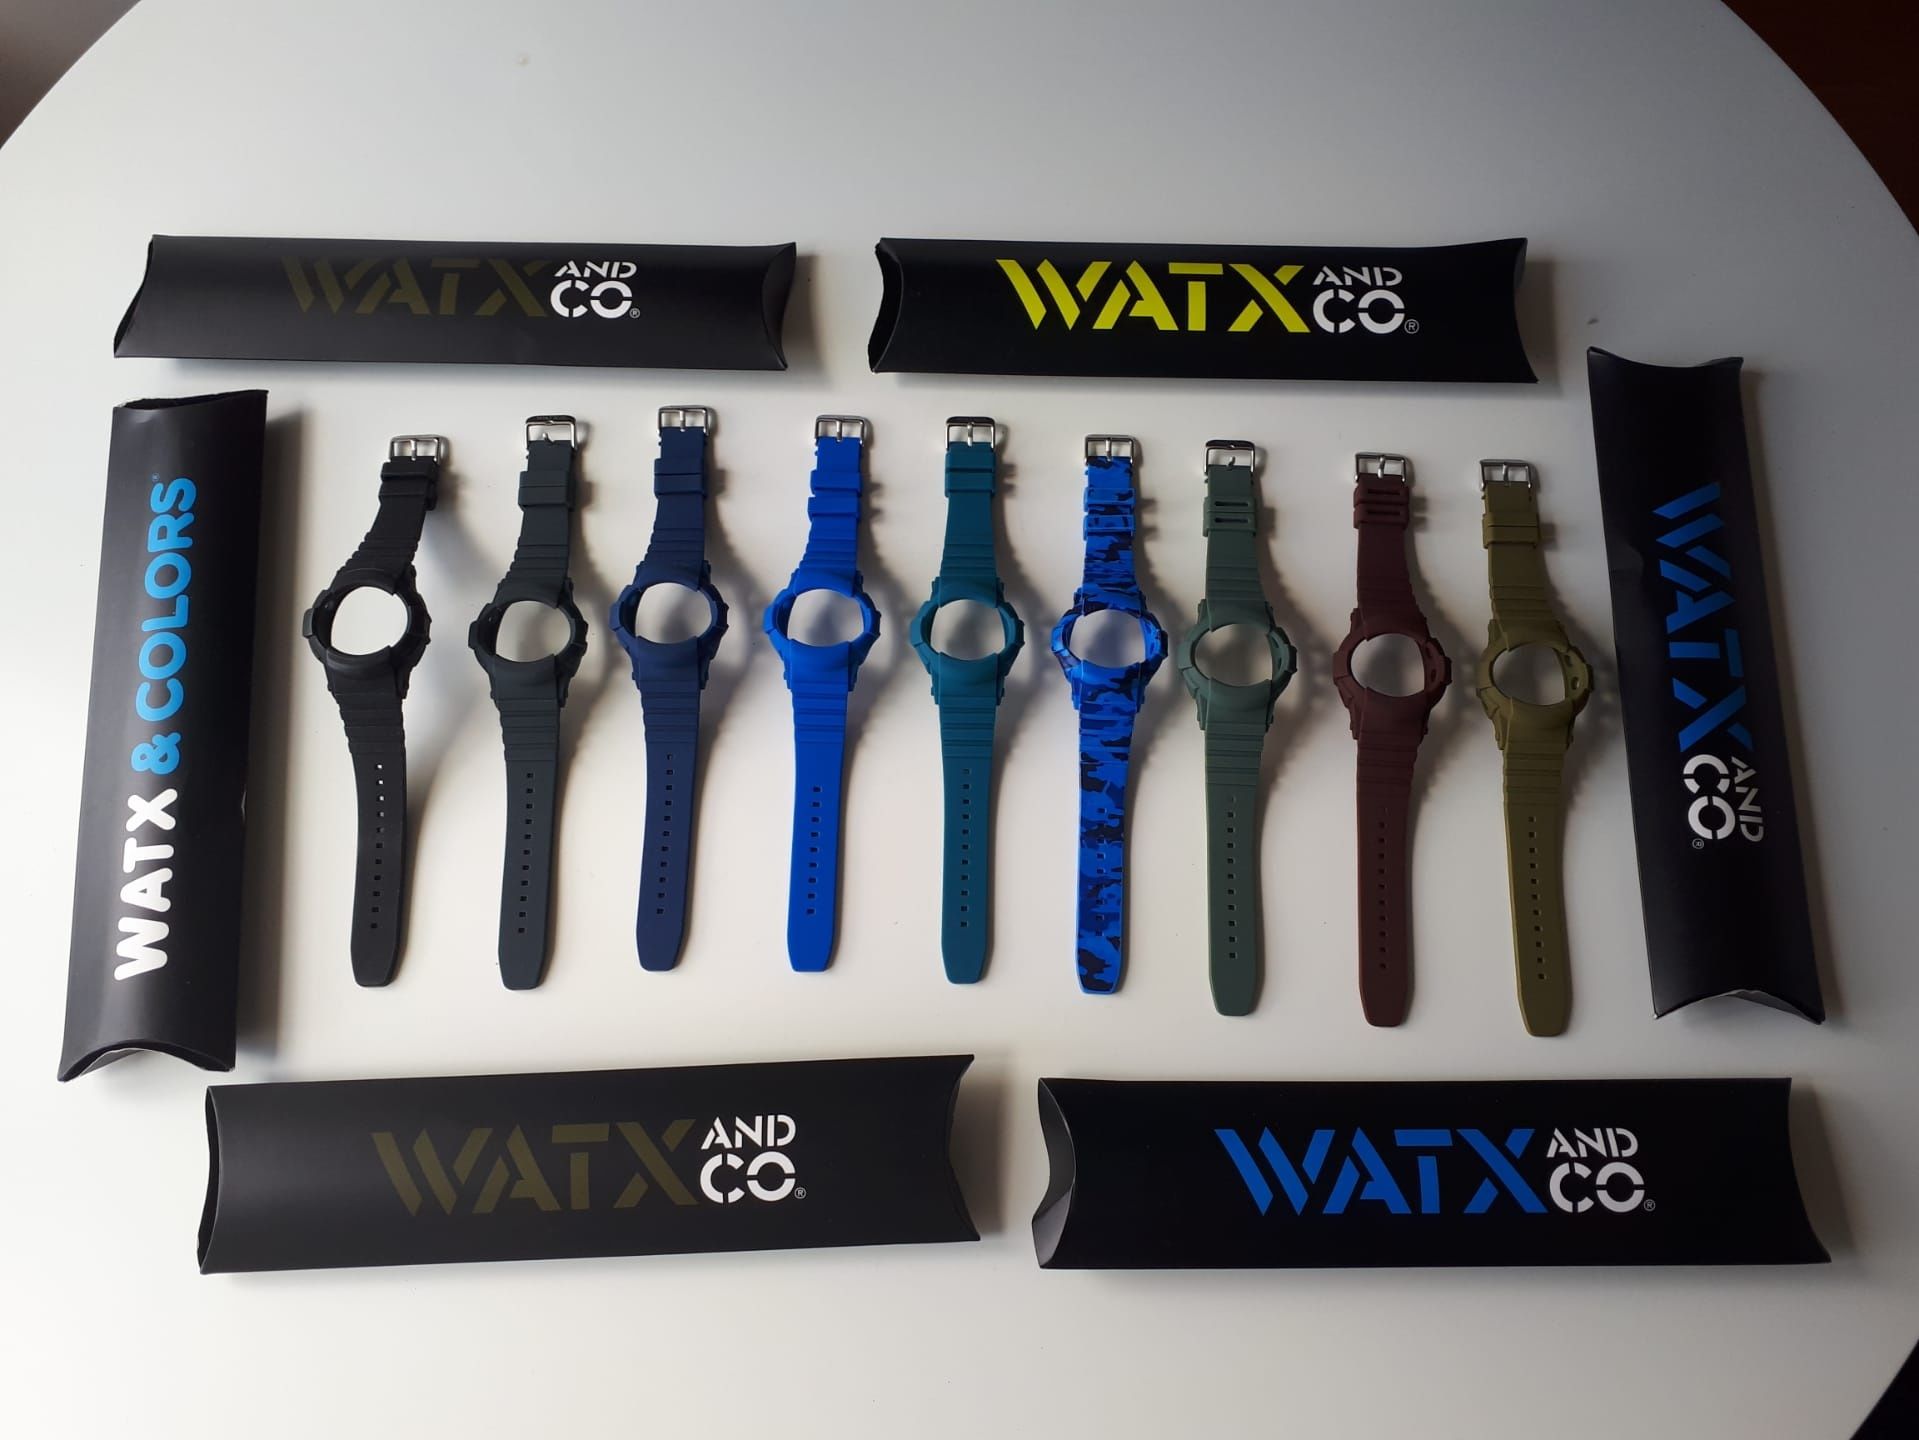 Relógios WATX e Braceletes, várias cores e modelos